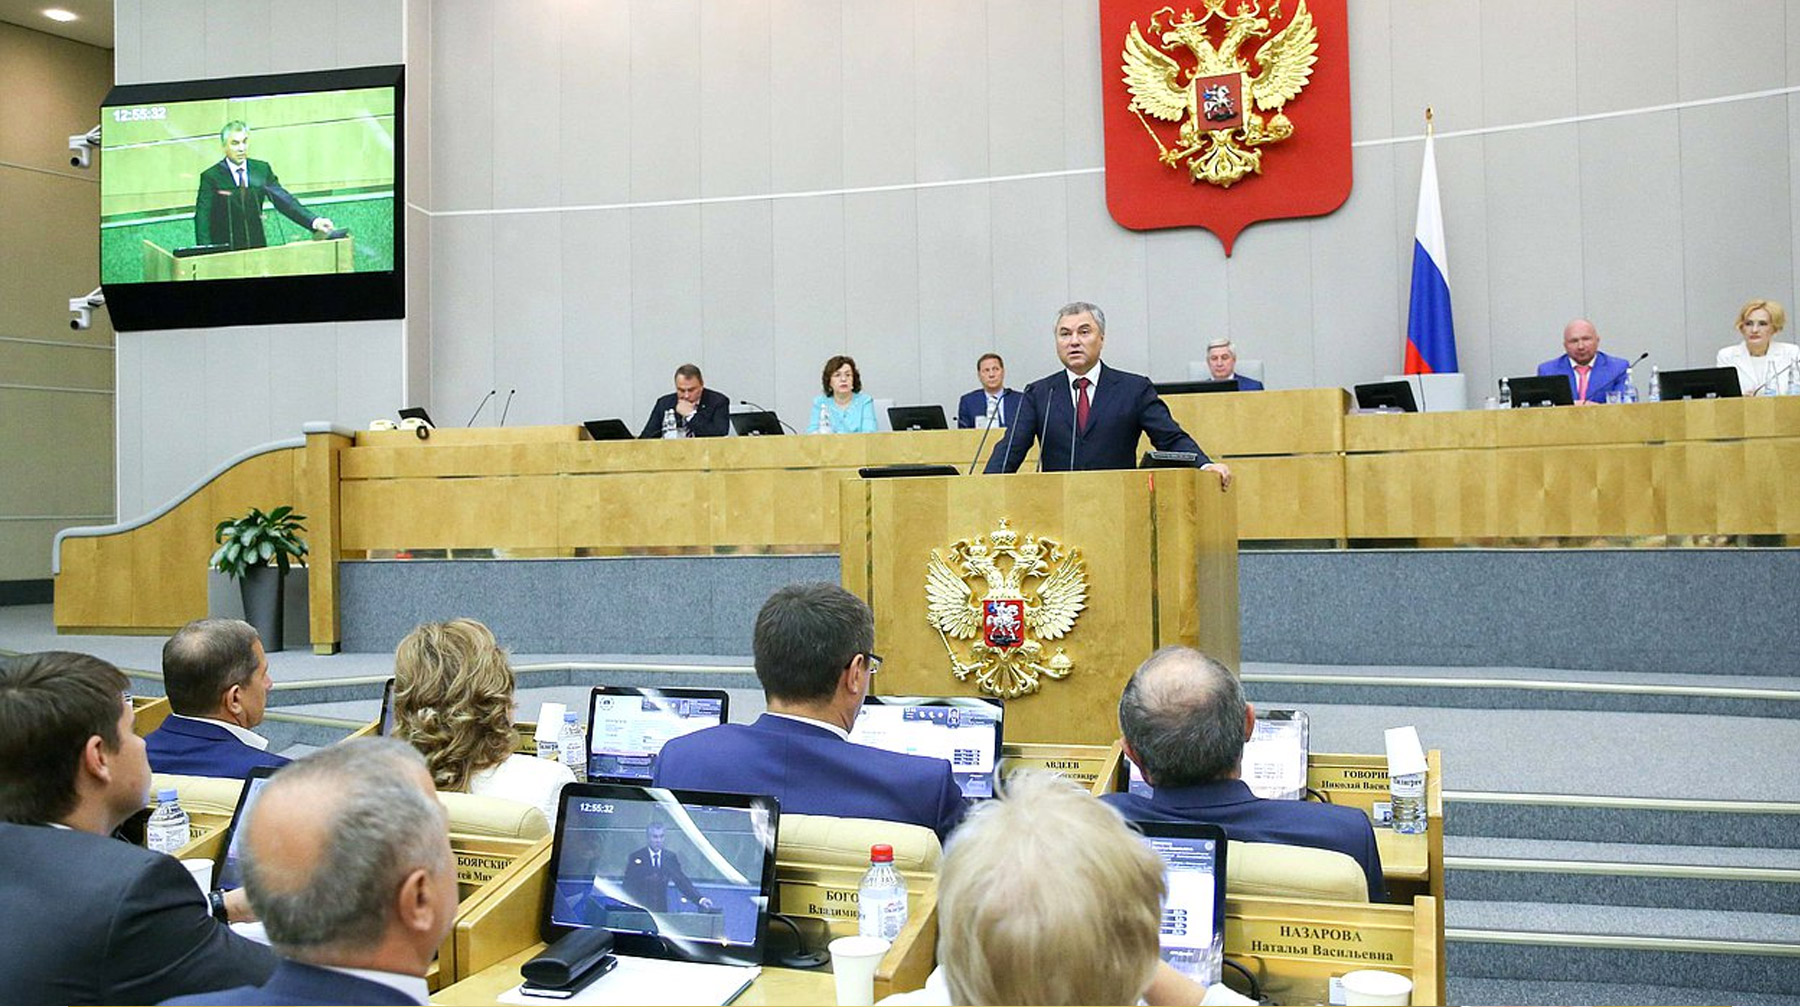 Социологическое исследование ВЦИОМ станет продолжением работы парламента над качеством законов Фото: © duma.gov.ru